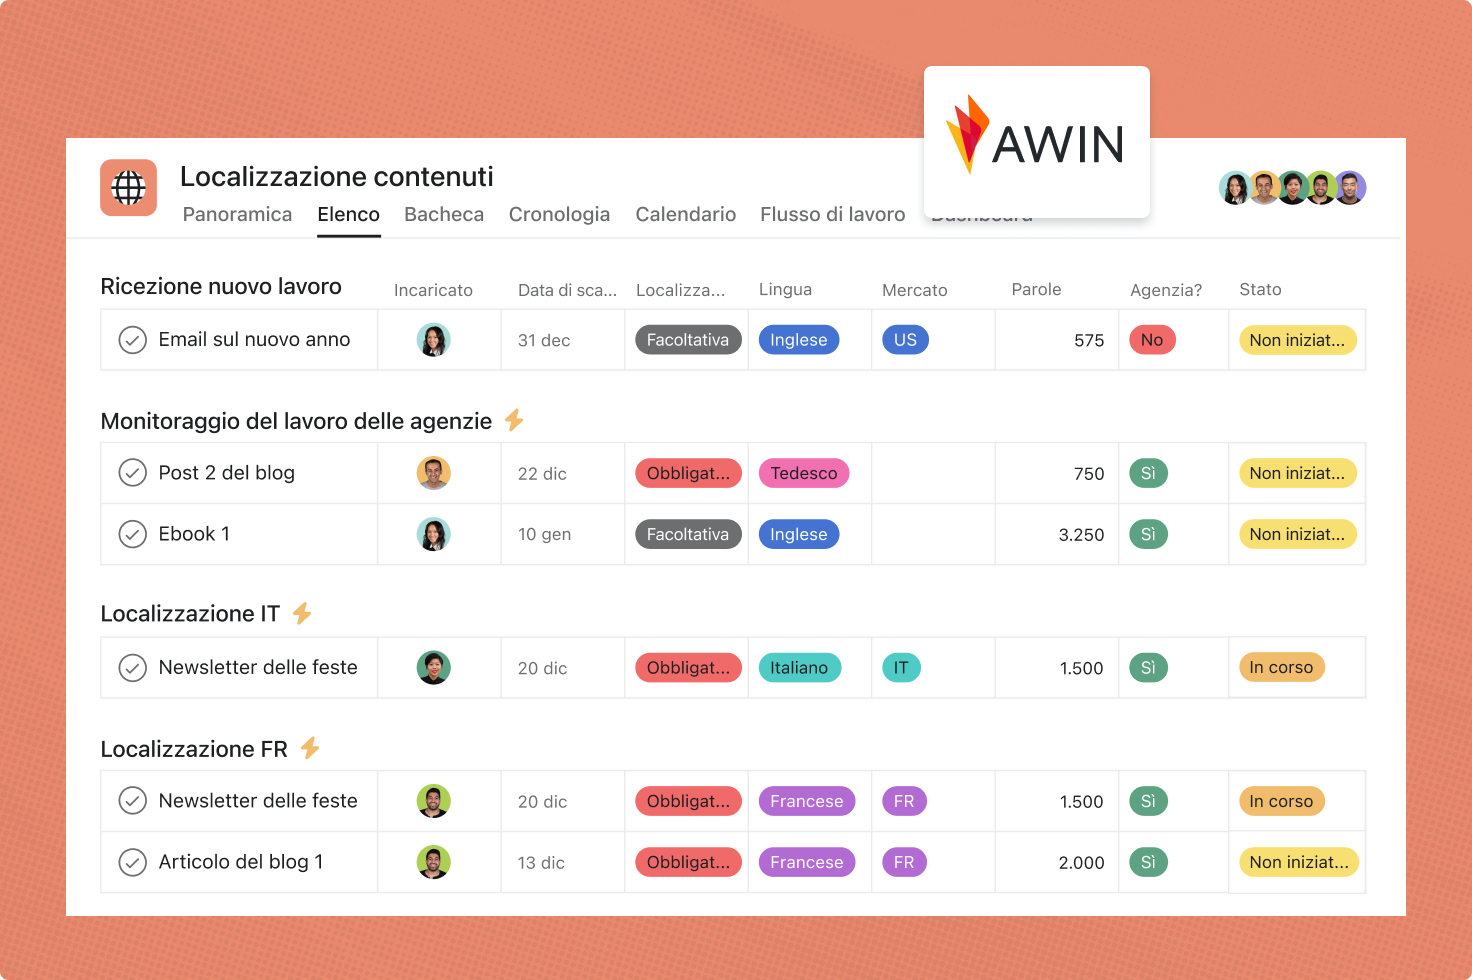 Awin usa Asana per il suo flusso di lavoro relativo alla localizzazione automatizzata